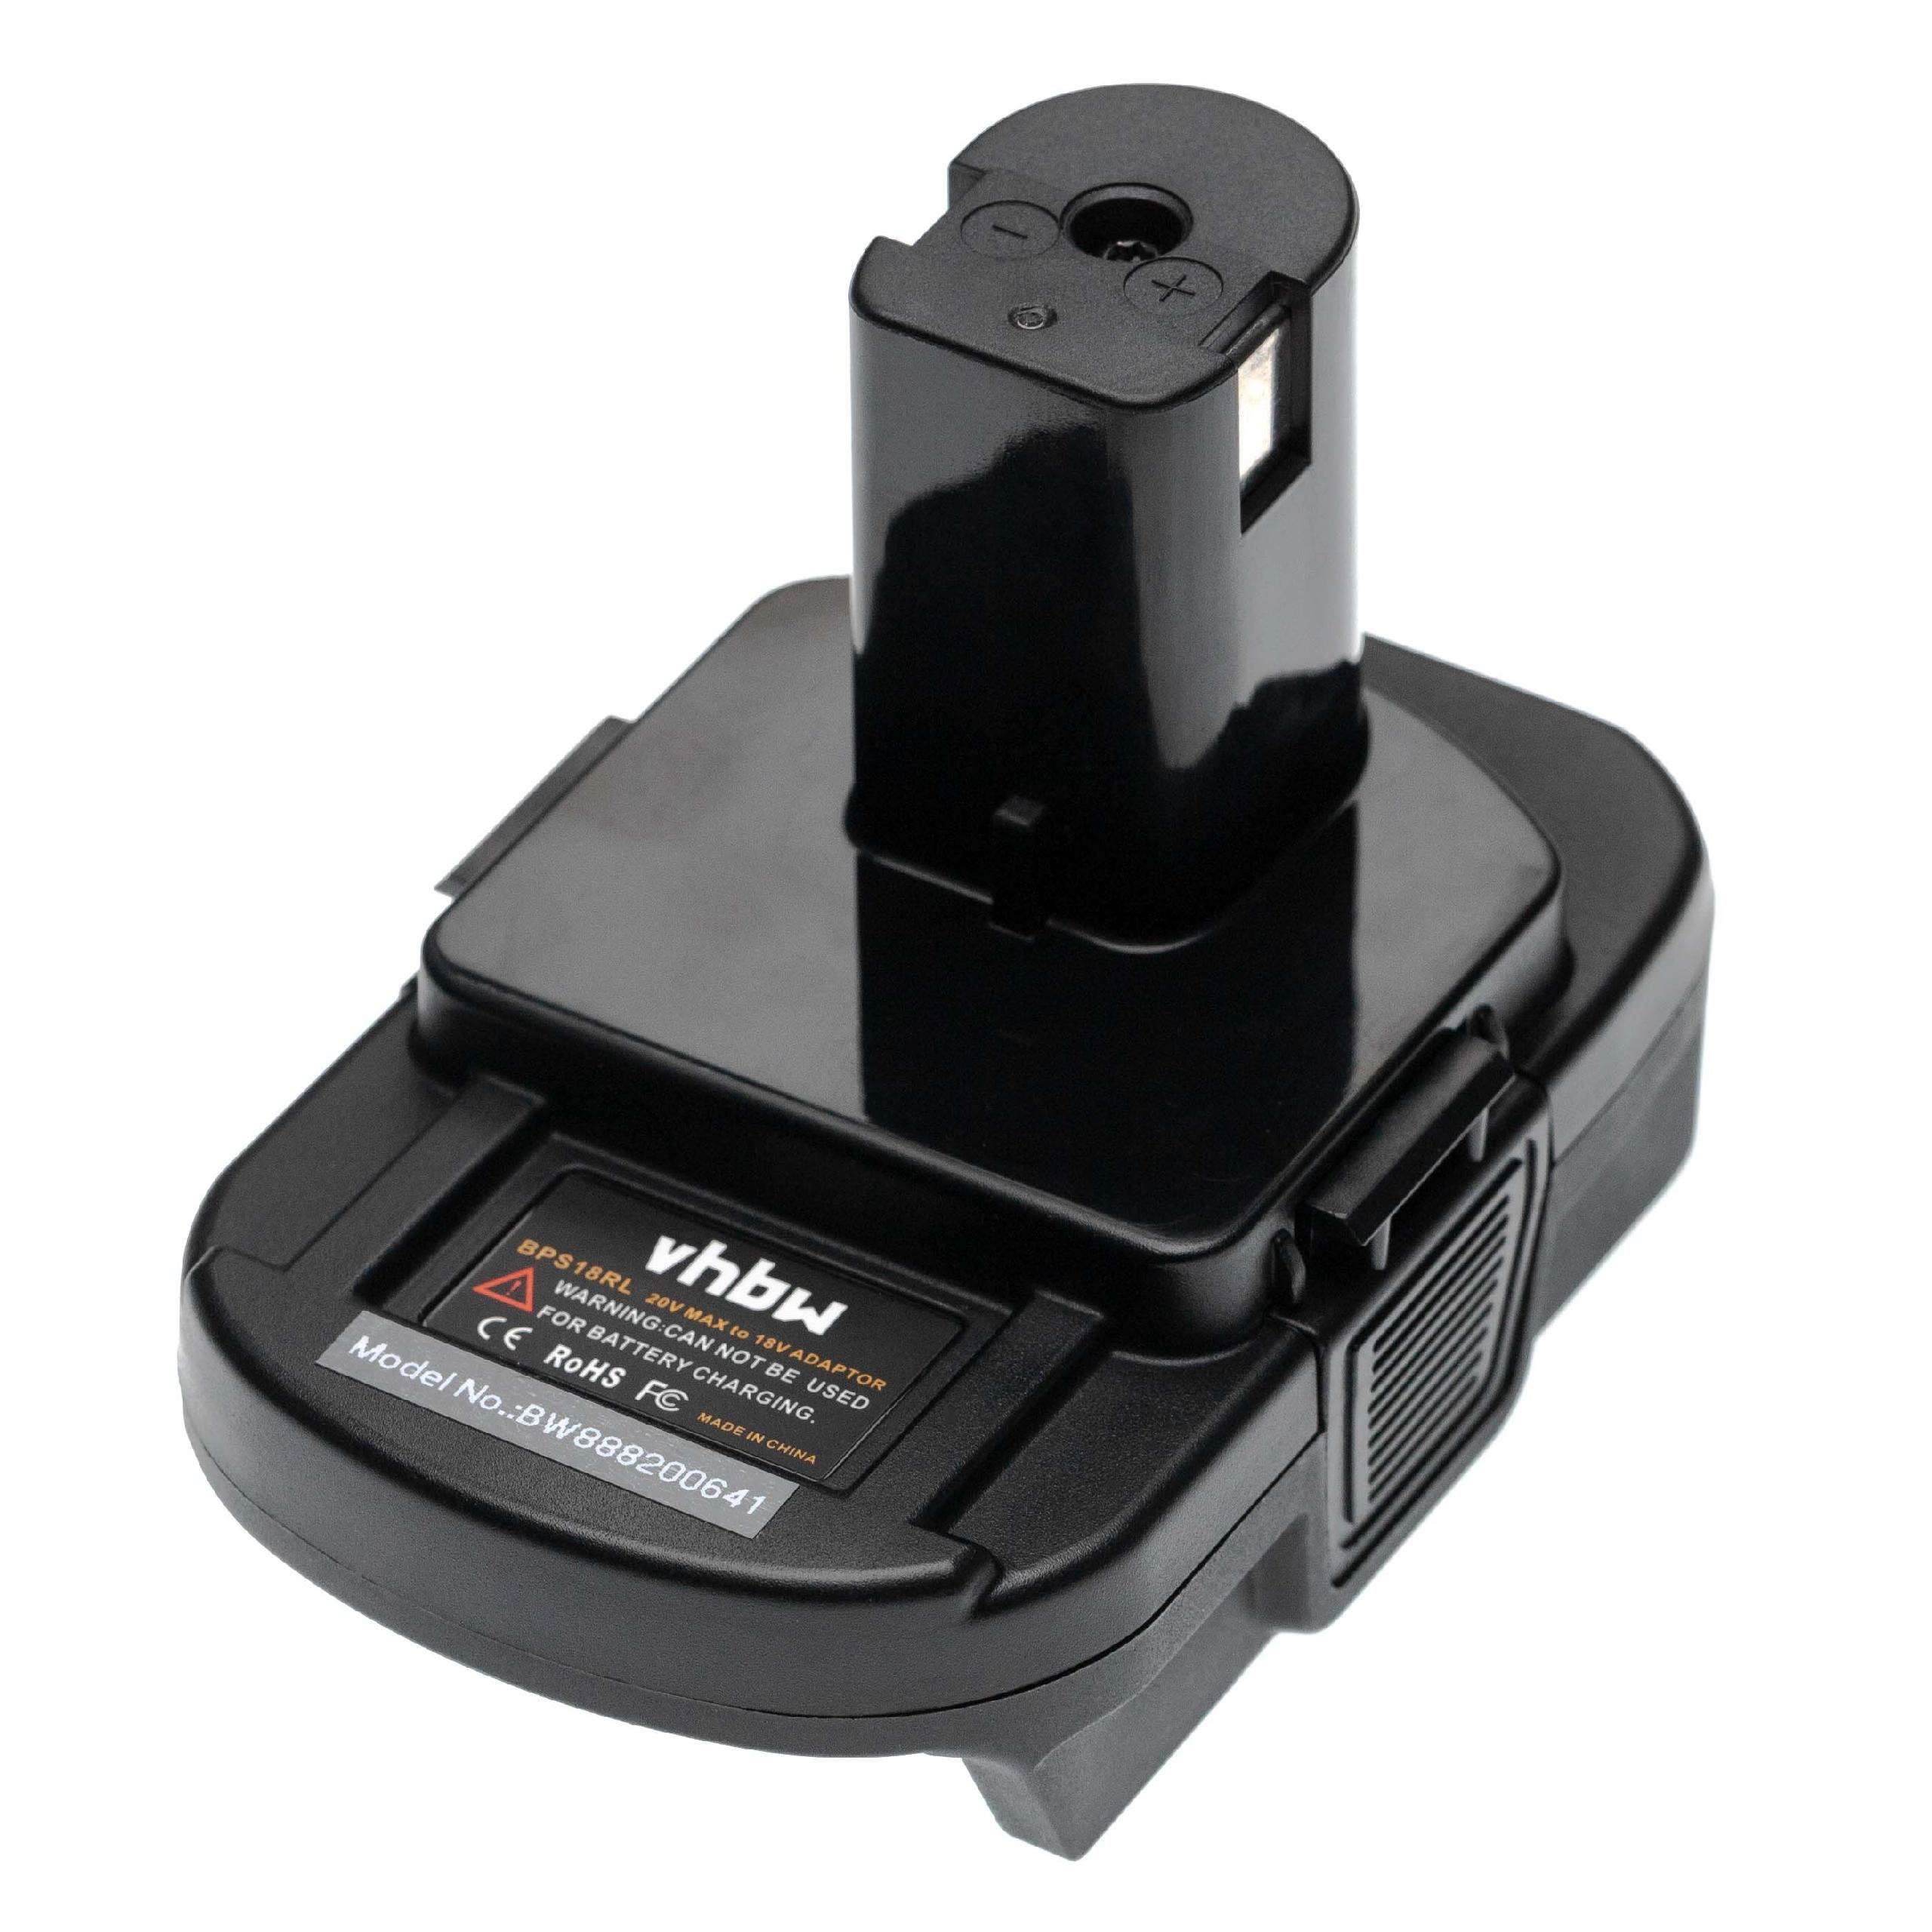 Adaptateur batteries Li-ion 20 V vers 18 V compatible avec Ryobi pour outils électriques Stanley, Black & Deck